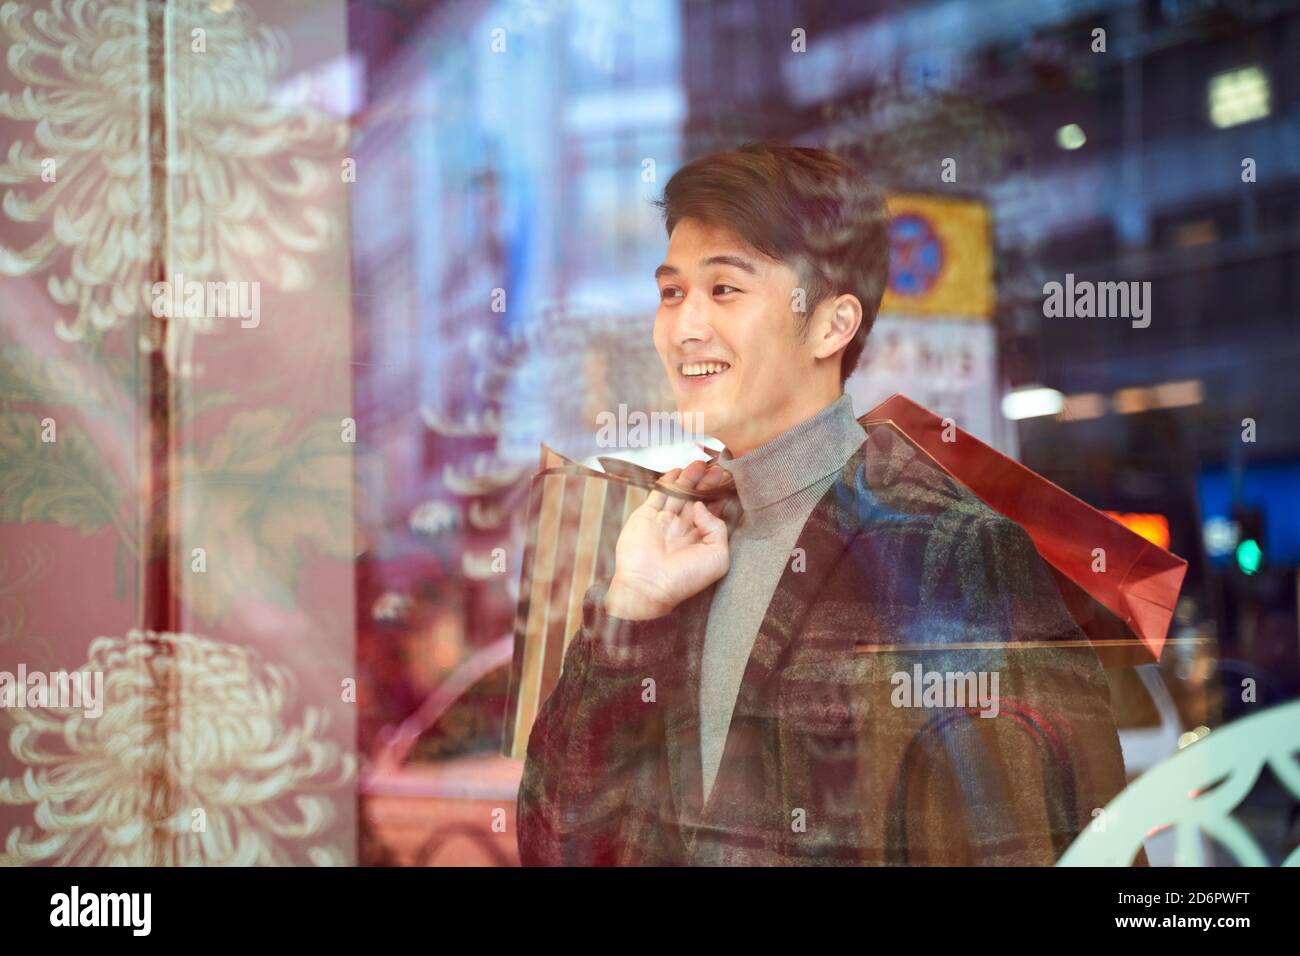 Glücklicher junger asiatischer Mann, der in das Schaufenster schaut und lächelt Moderne Stadt Stockfoto